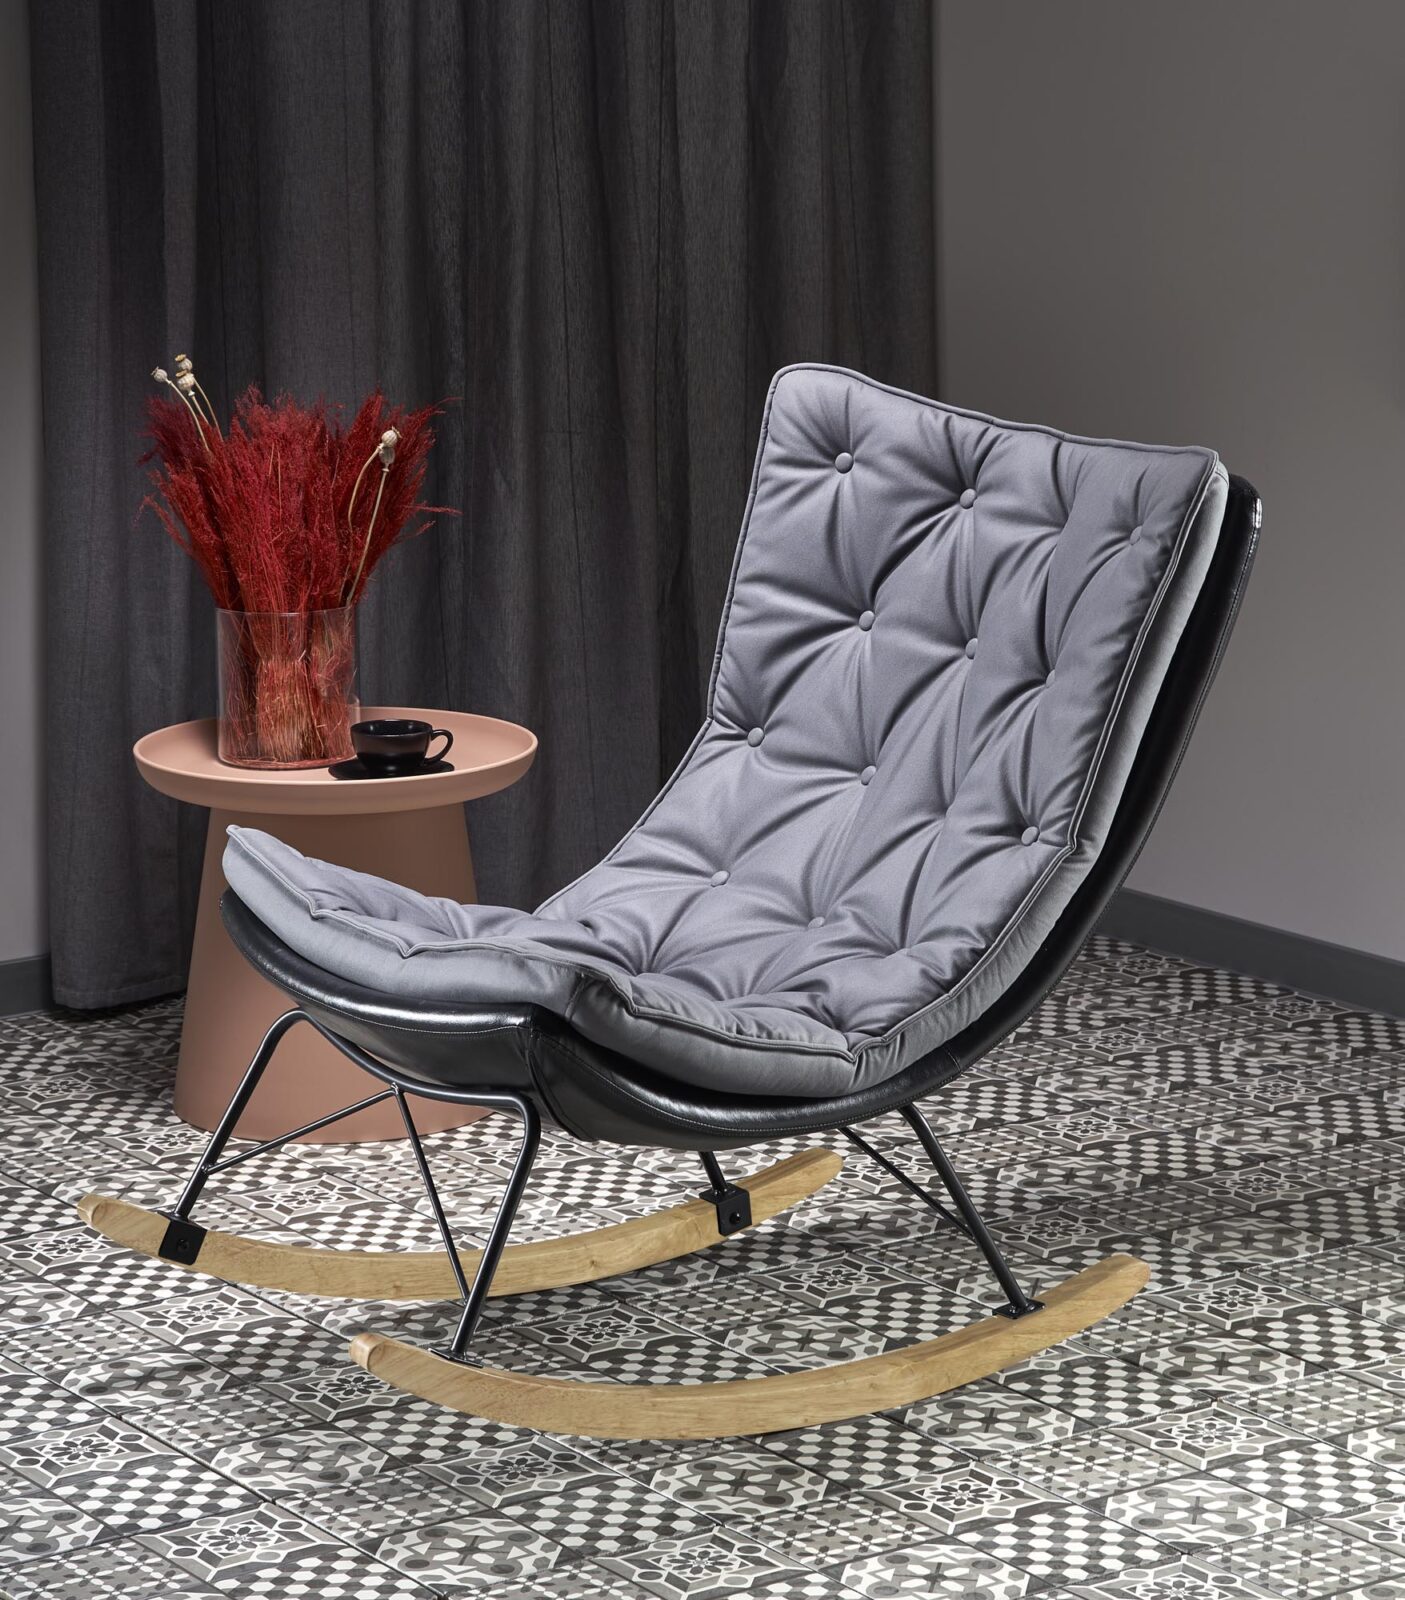 INDIGO chair color: dark grey/black